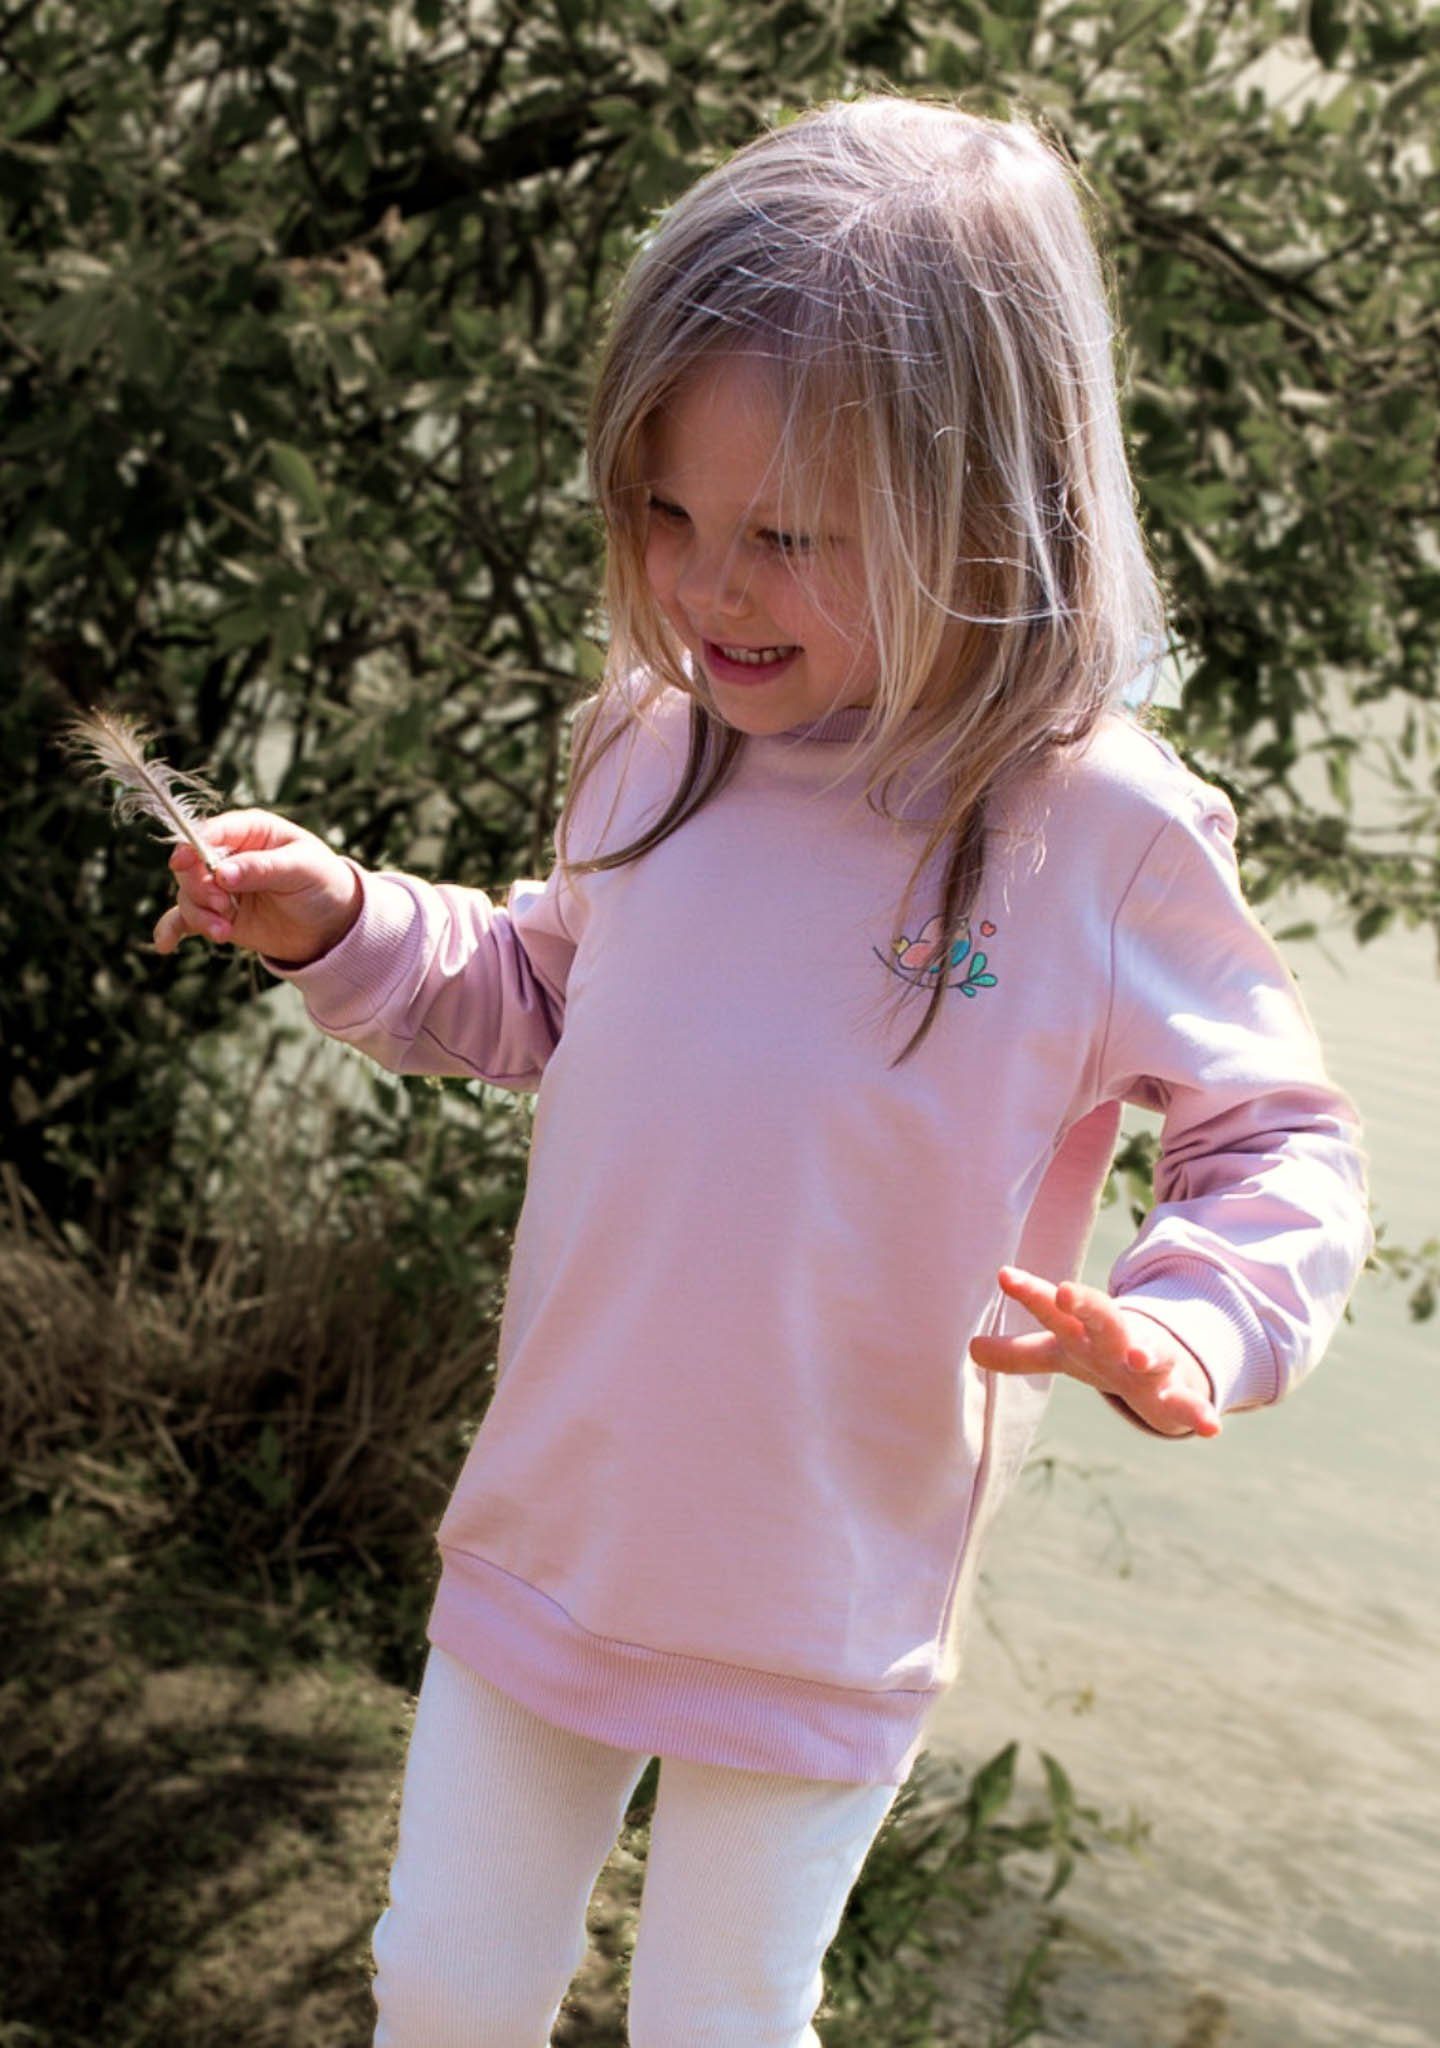 Noah's Ark Sweatshirt Pullover für Kinder Flieder aus Baumwolle 100% Baumwolle, in Unifarben